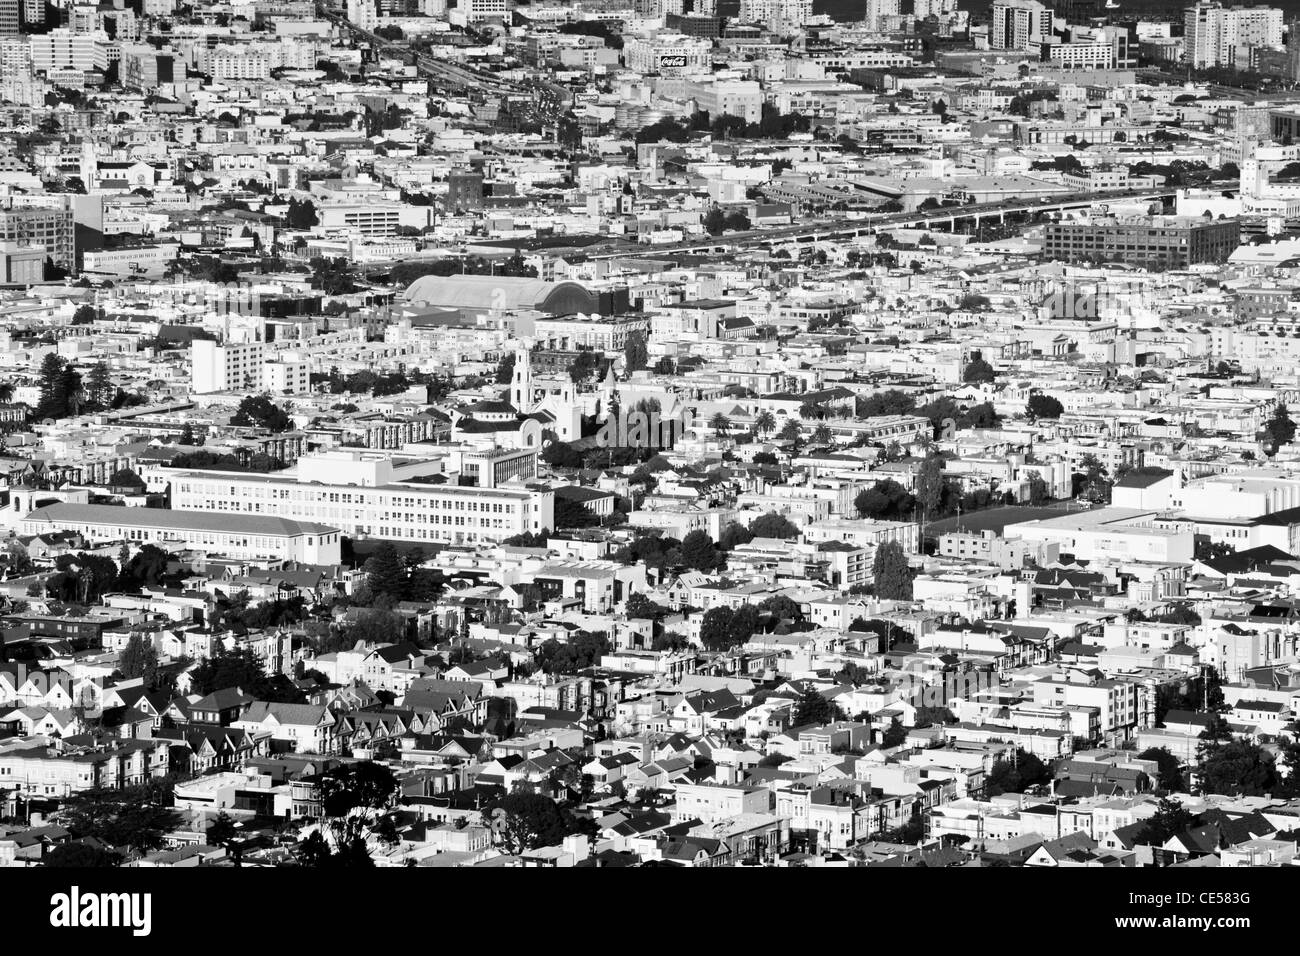 Fotografia in bianco e nero di San Francisco periferia, mostrando il fitto proliferazione urbana di edifici, strade e alberi. Foto Stock